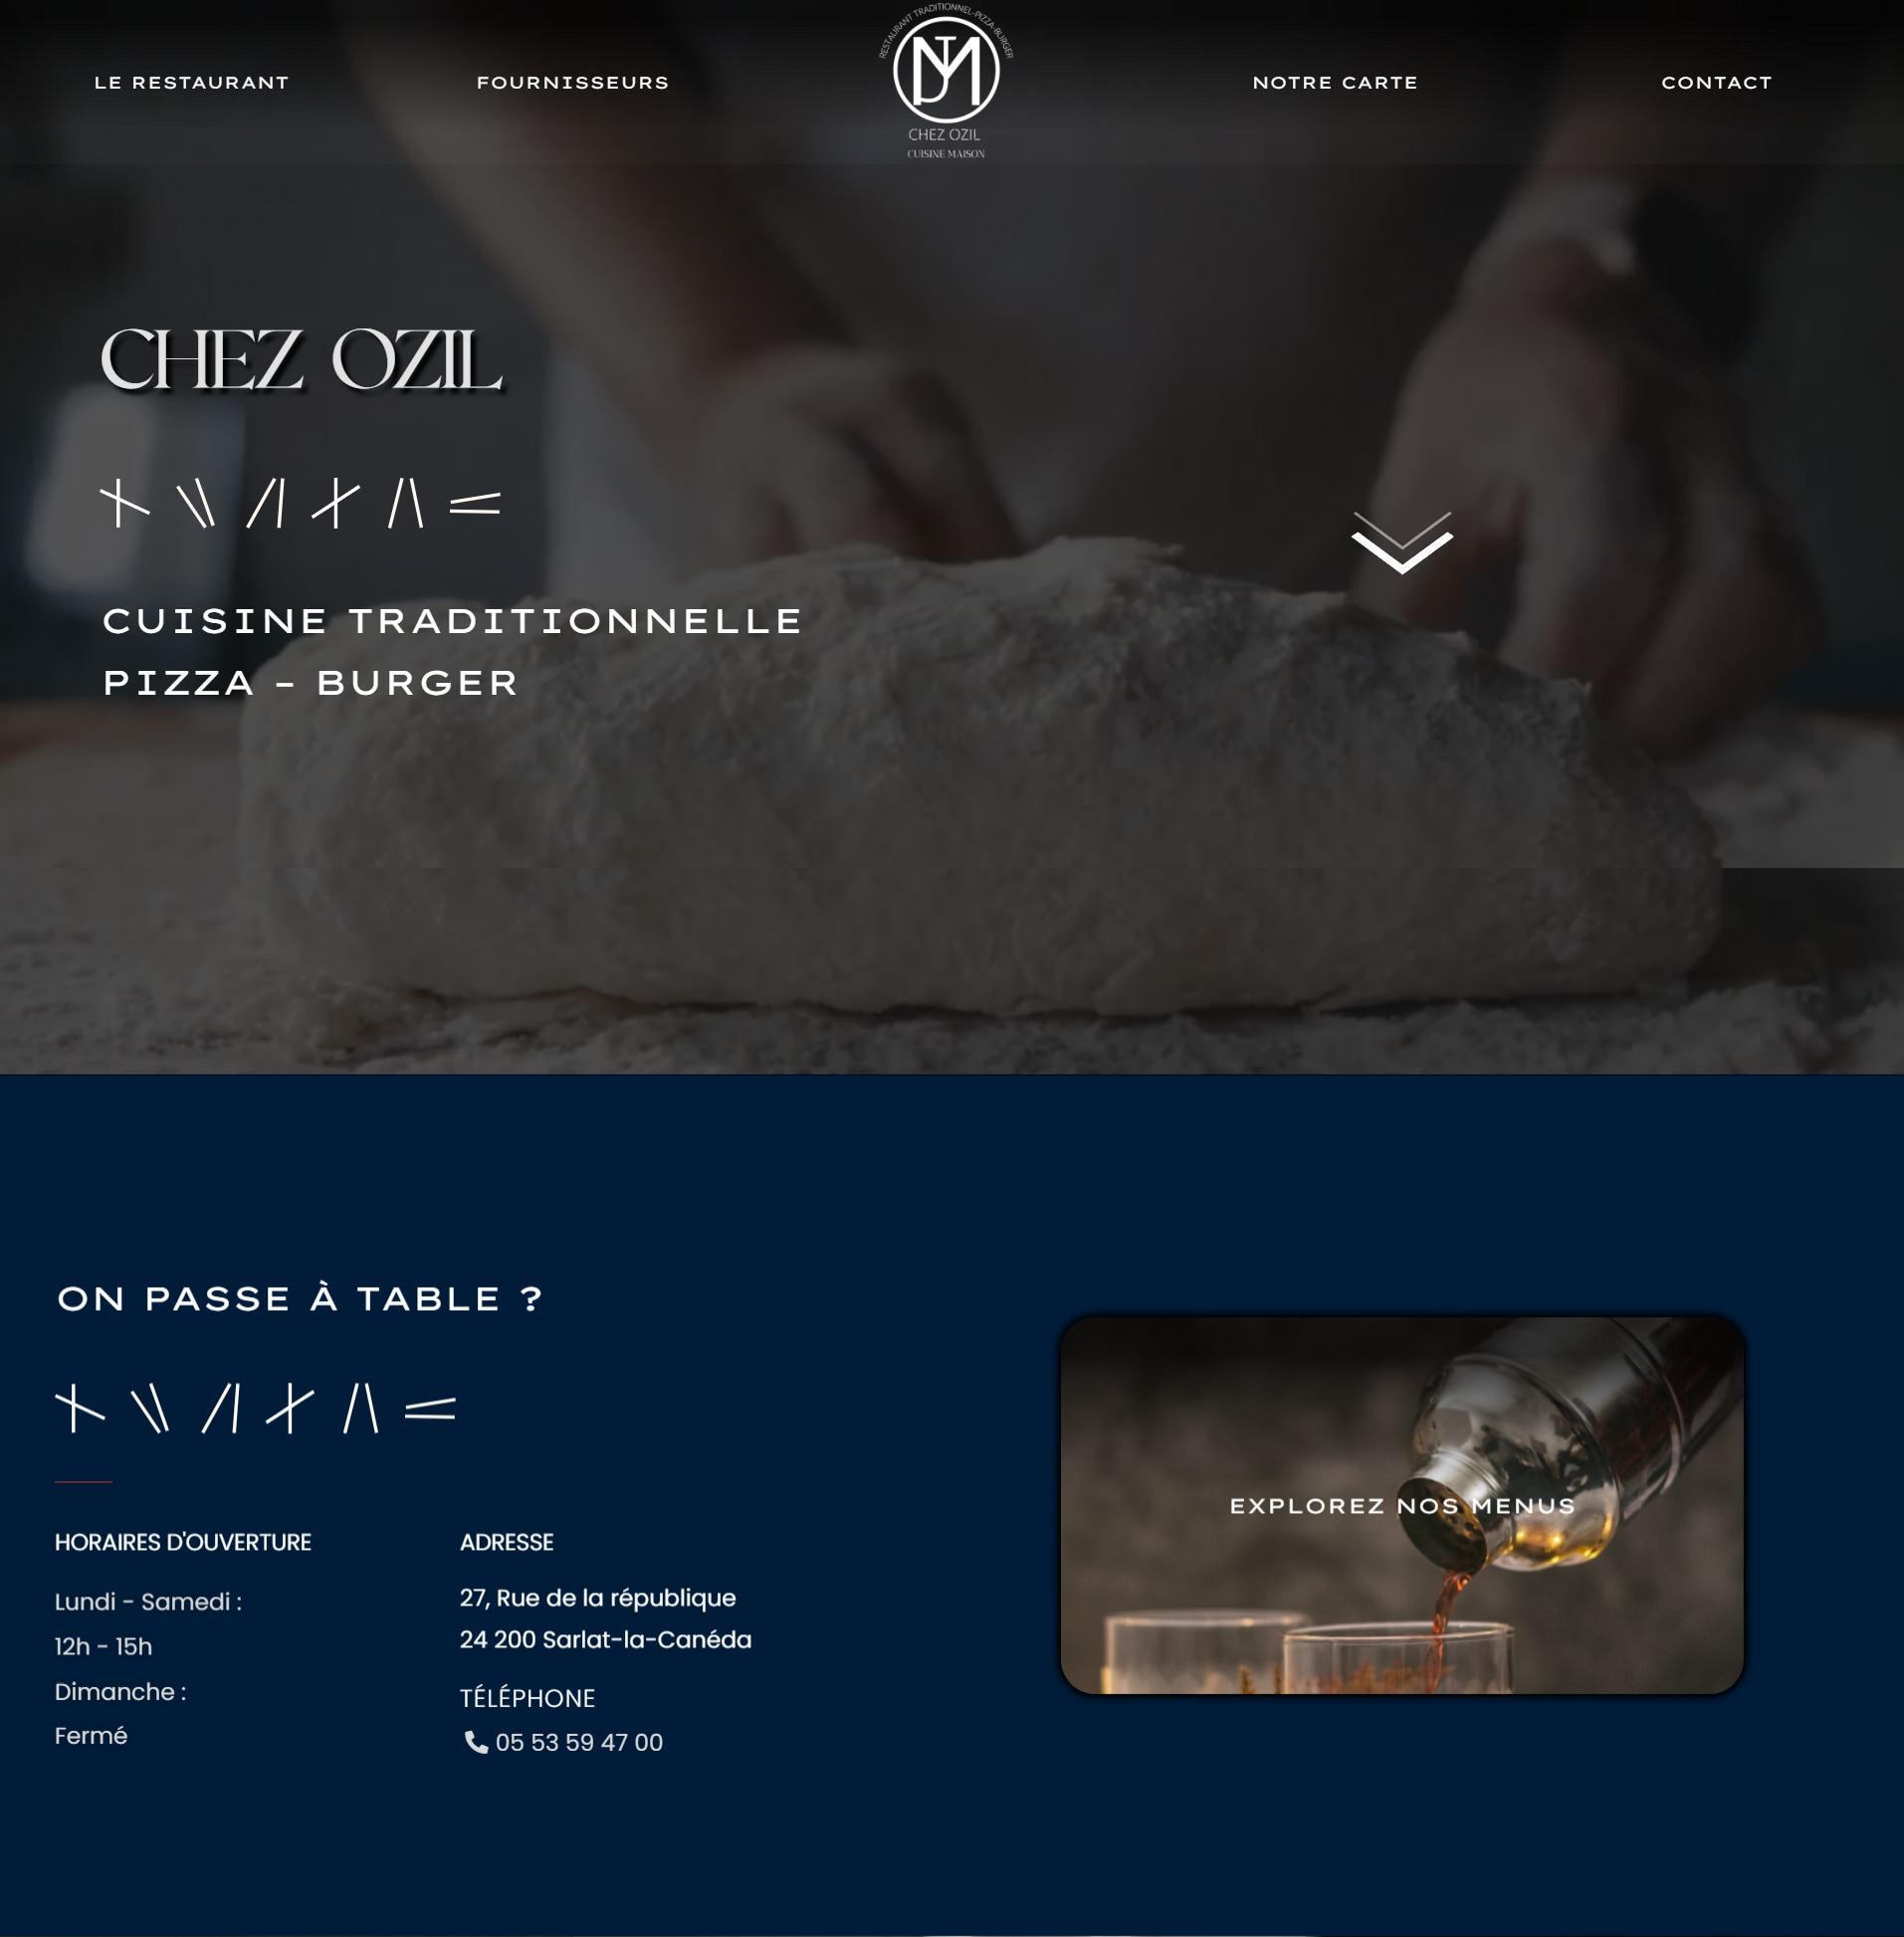 ducke creation site internet sarlat dordgone réalisation projet chez ozil capture ecran page entiere hero